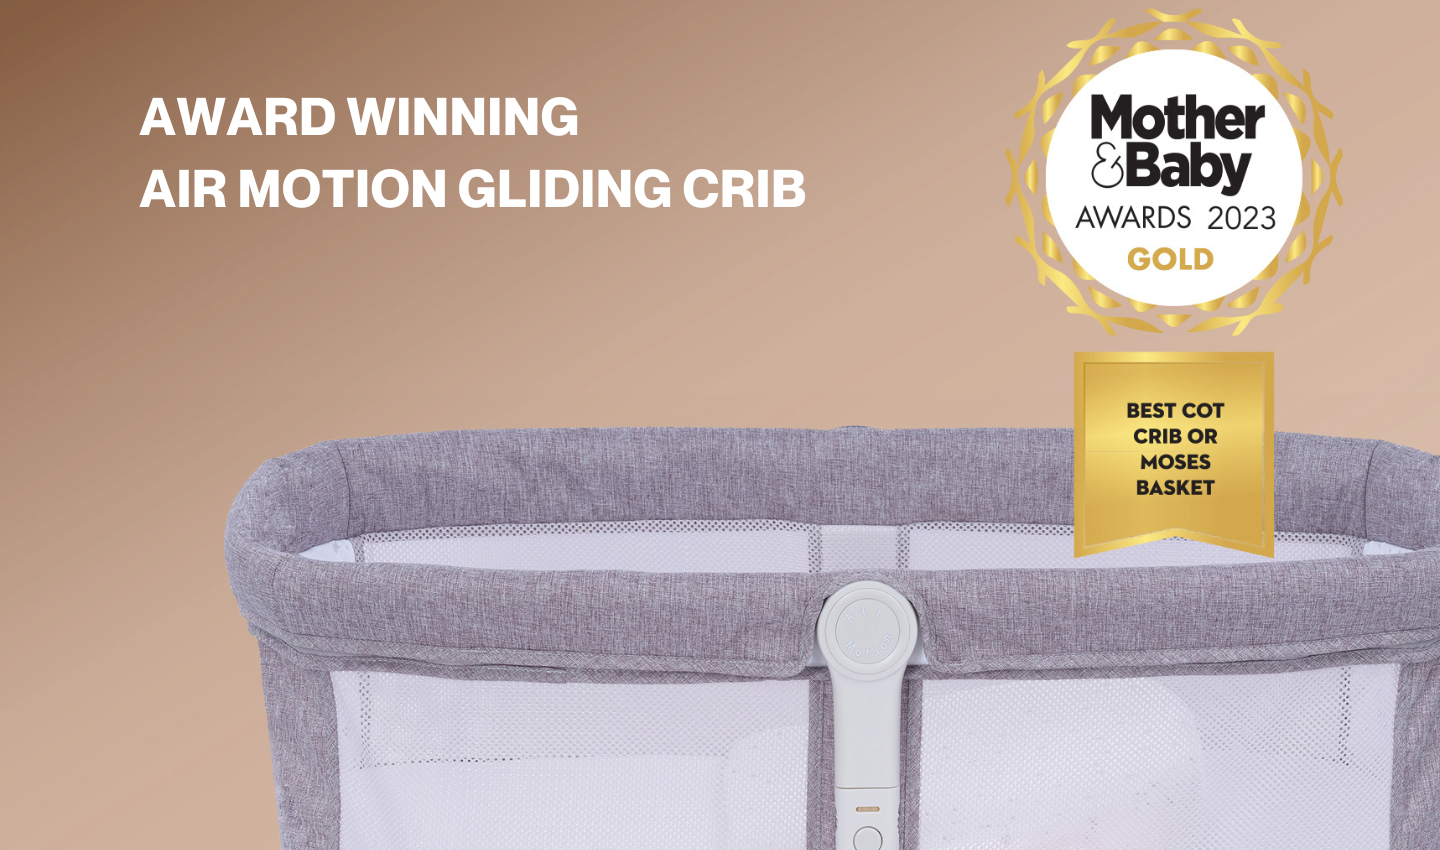 Air Motion Gliding Crib wins Gold